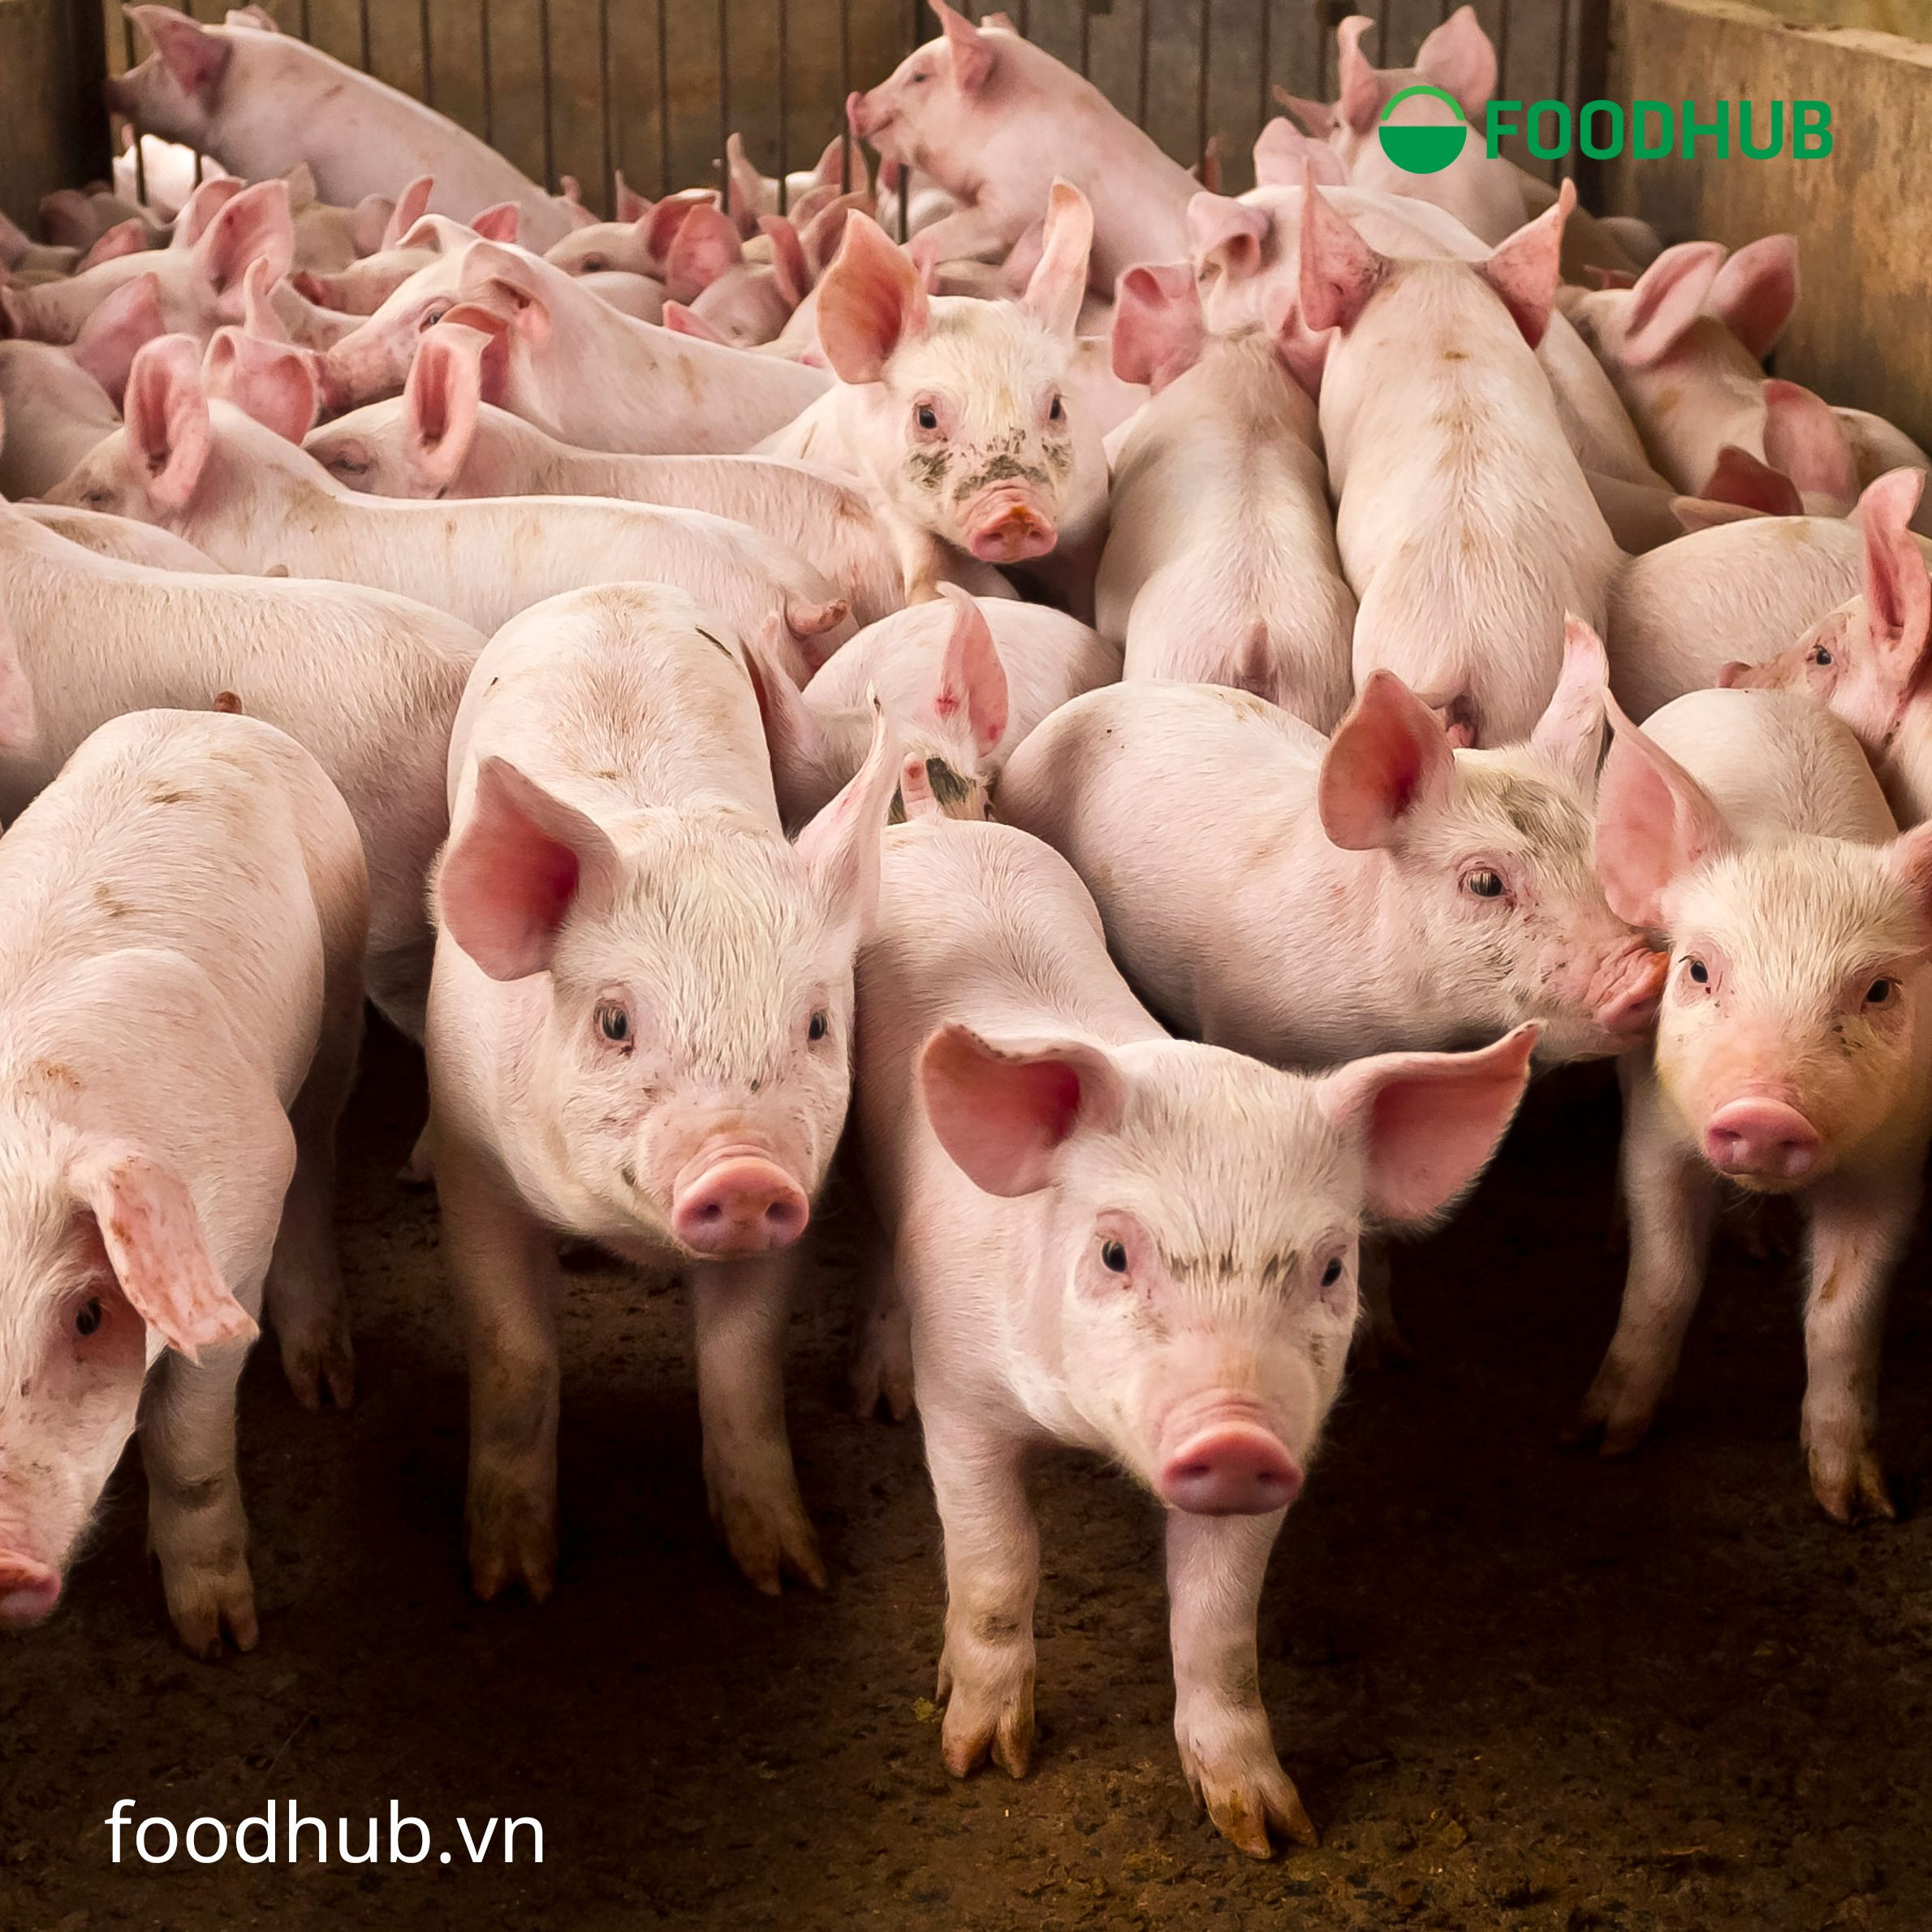 Sử dụng kháng sinh trong chăn nuôi quá mức làm gia tăng tỷ lệ kháng kháng sinh 